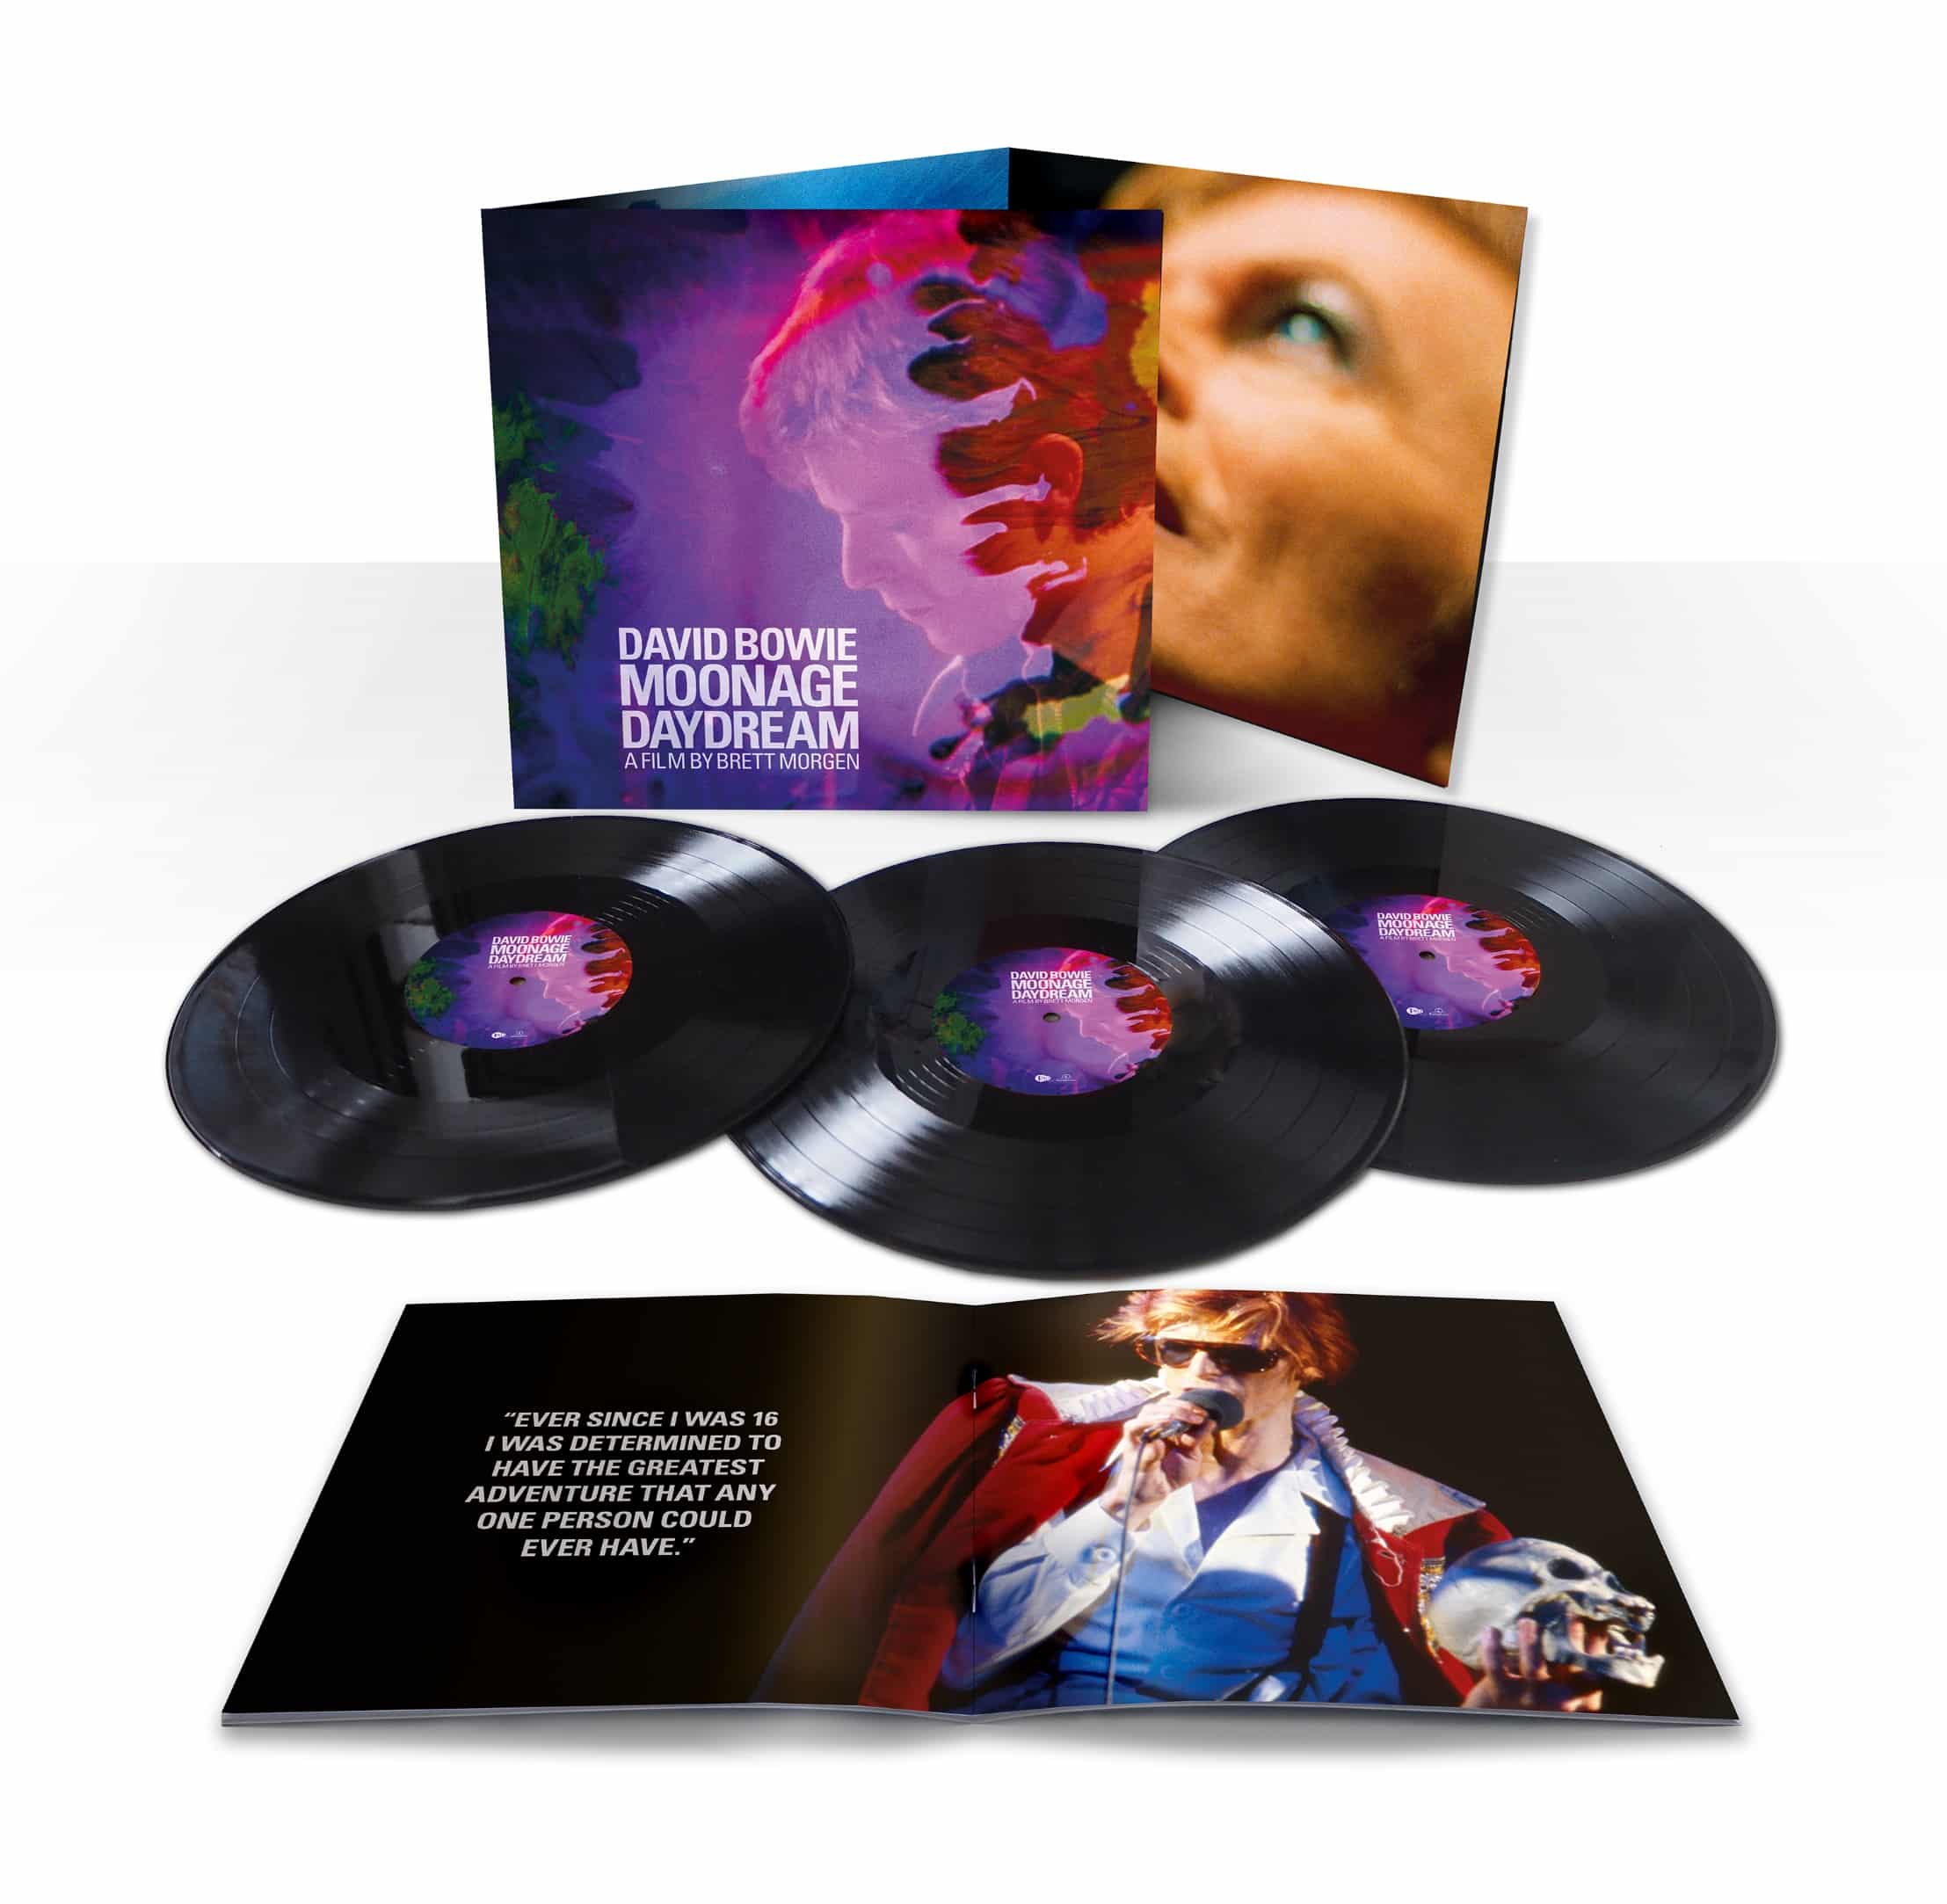 David Bowie Moonage Daydream vinyl